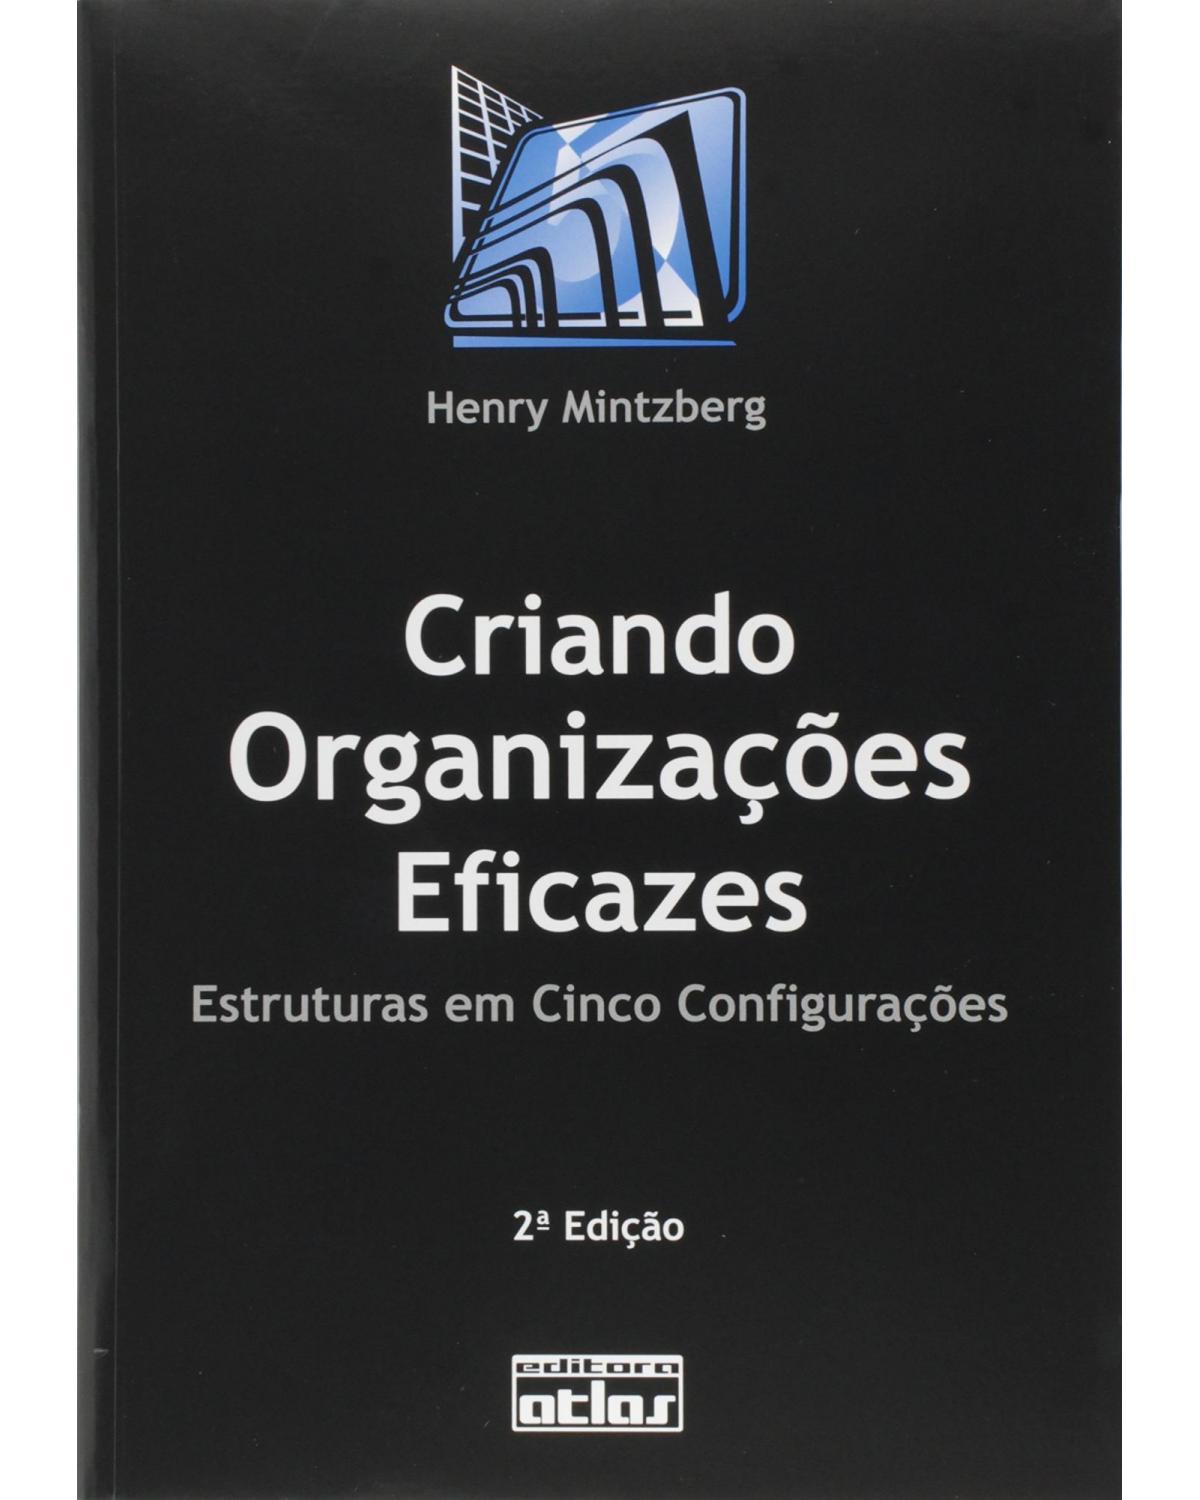 Criando organizações eficazes - Estruturas em cinco configurações - 2ª Edição | 2003